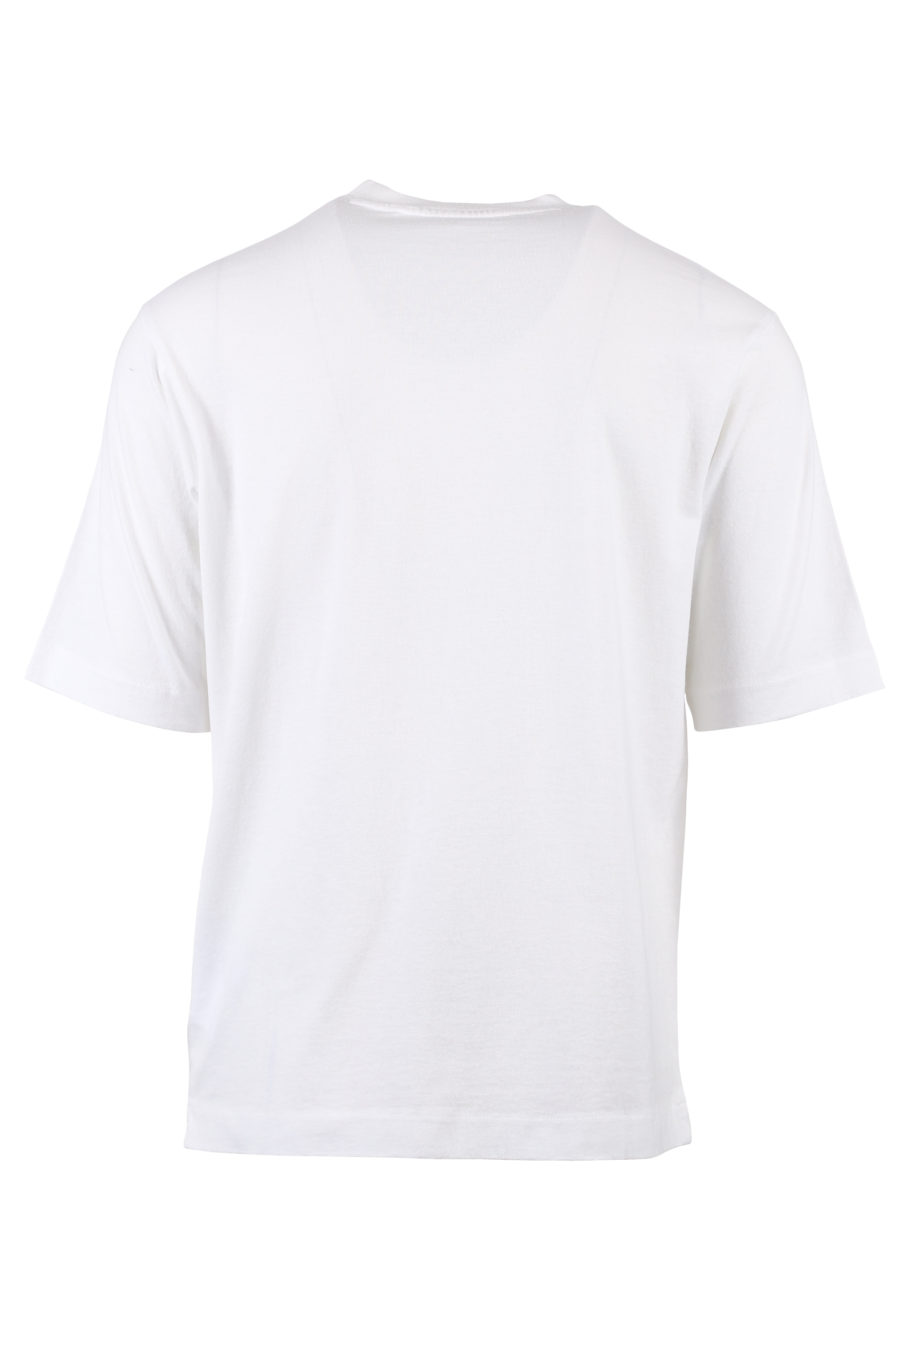 Camiseta blanca con logo negro y blanco - IMG 1355